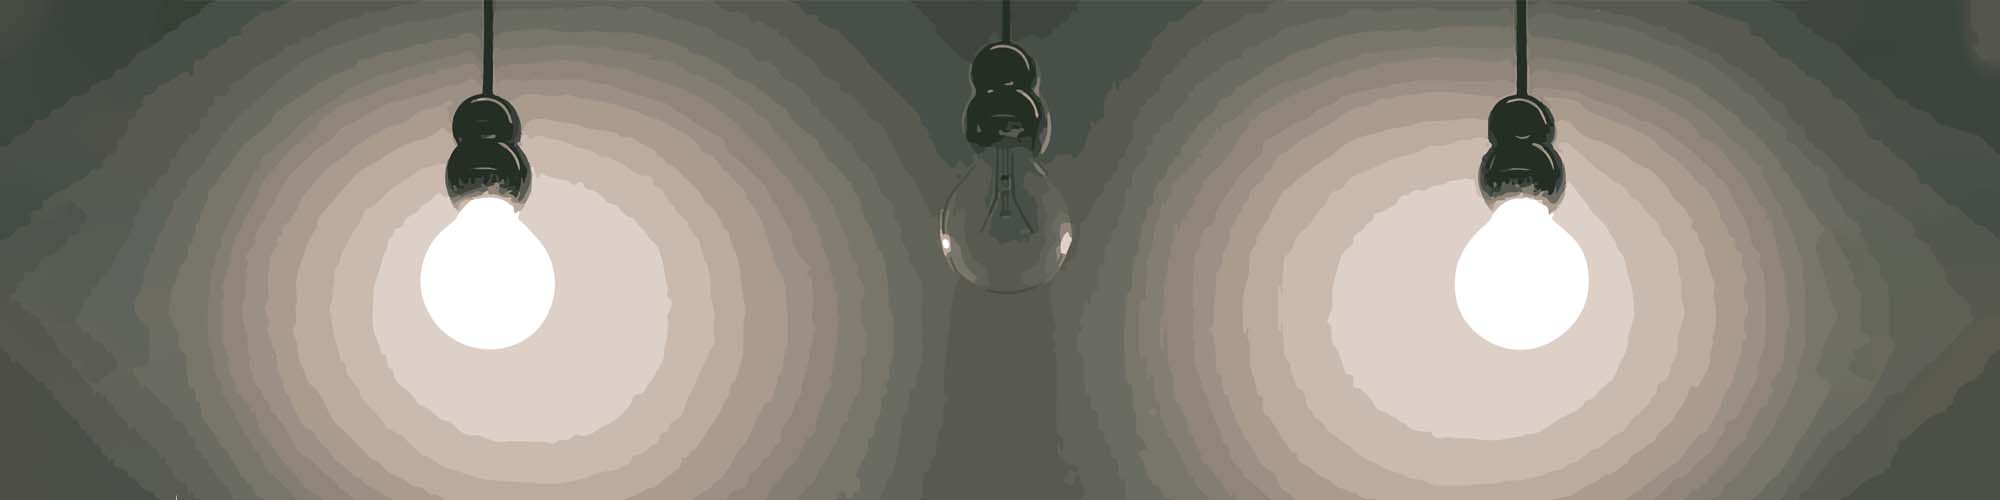 light bulb not working kitchen hanging lights cartoon